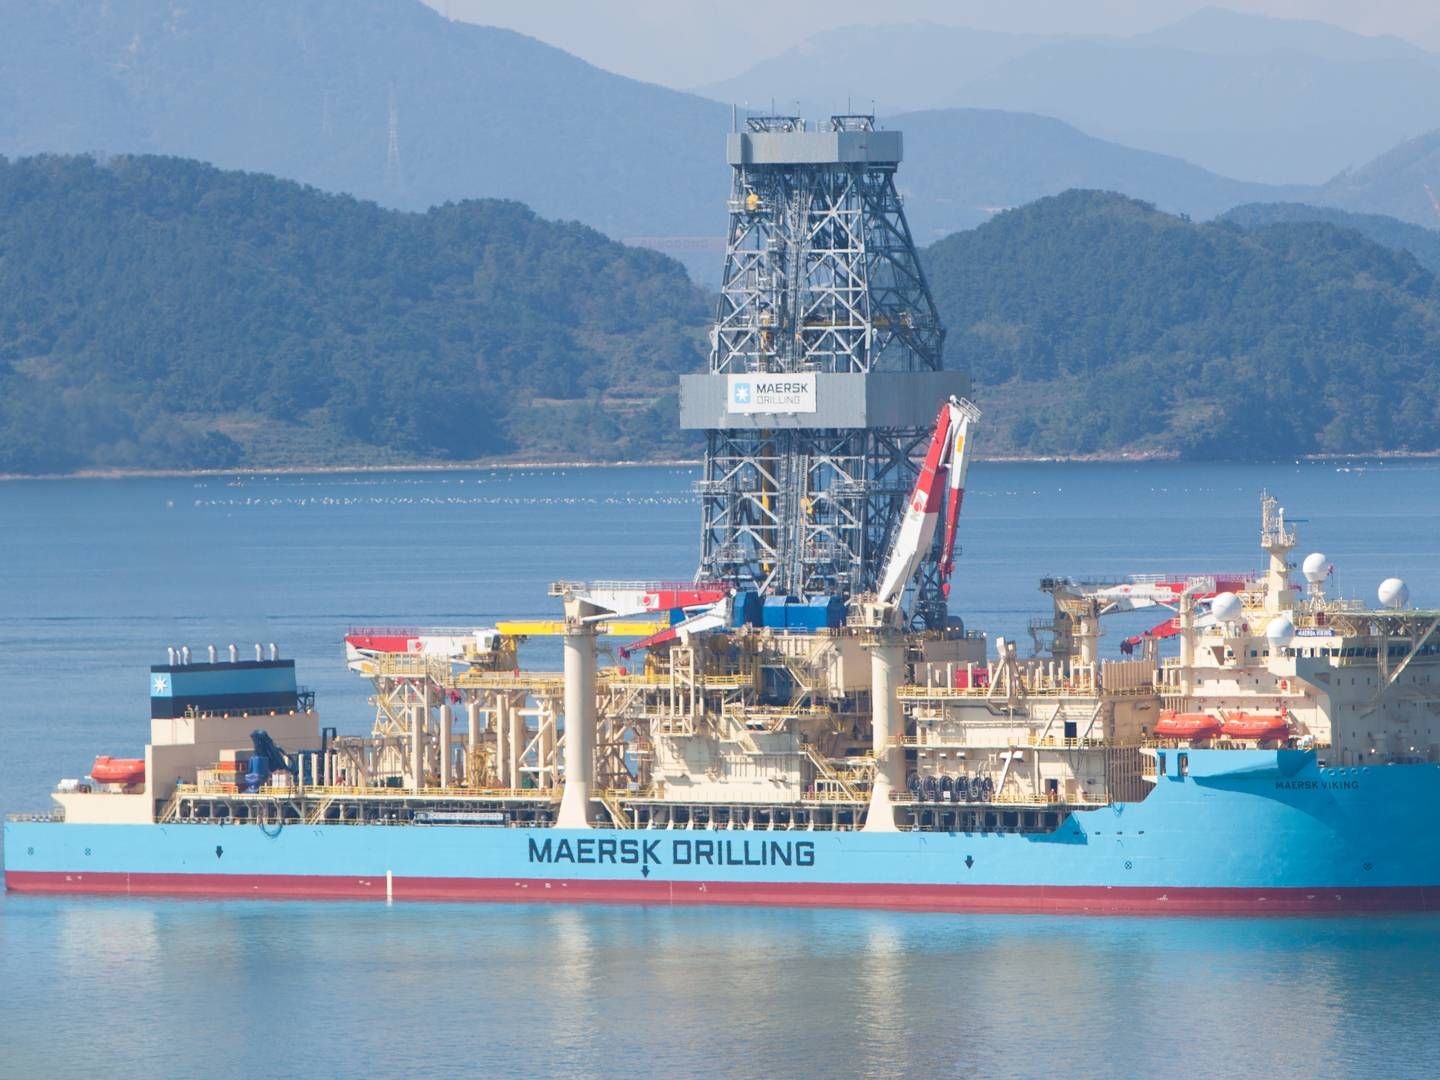 Maersk Drlling-navnet forsvinder og erstattes af Noble. | Foto: PR / Maersk Drilling